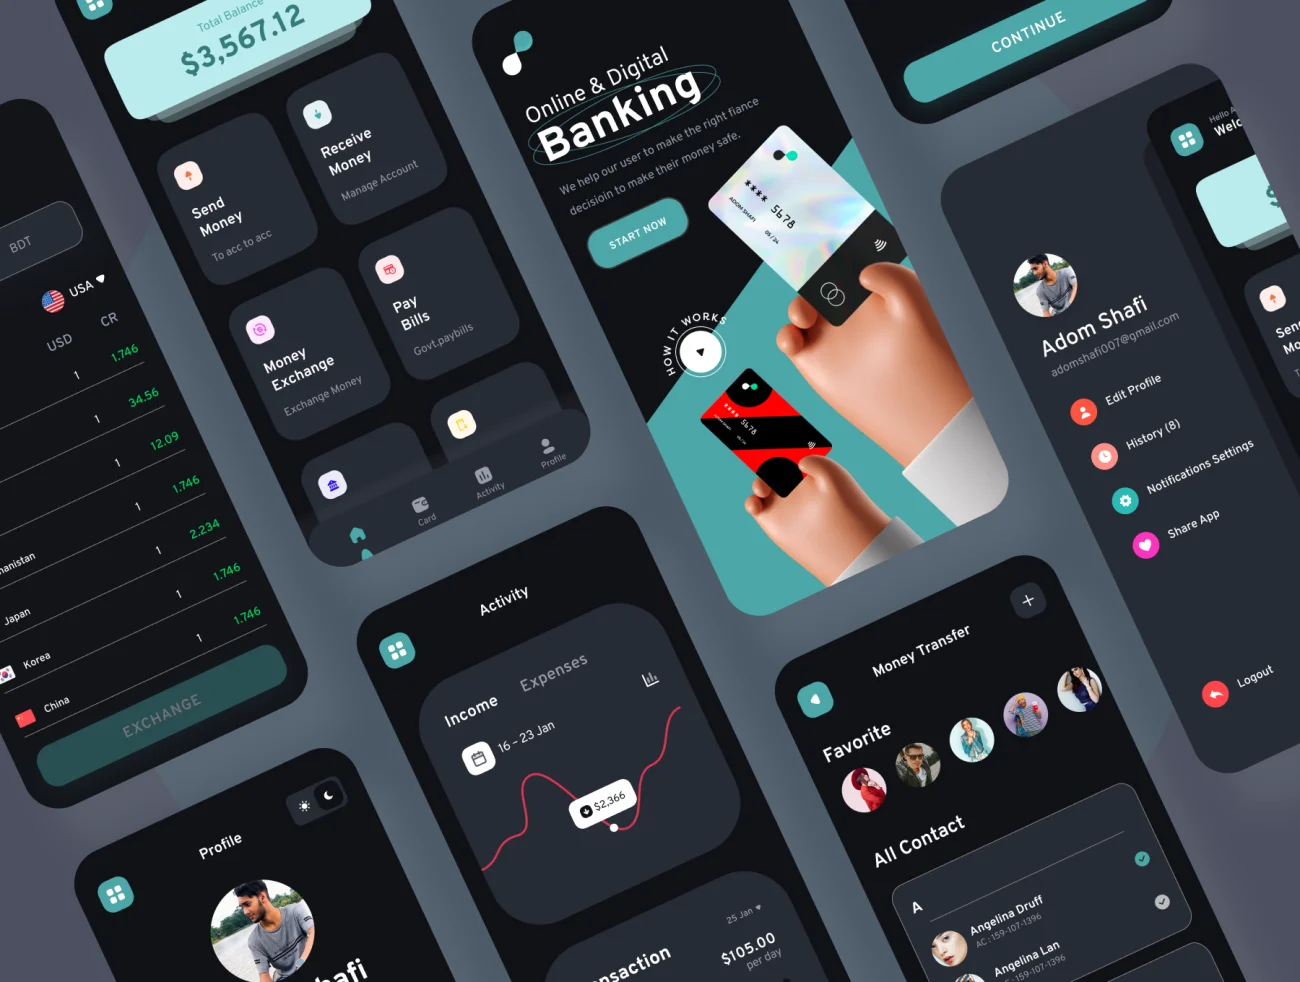 90屏手机银行金融理财电子钱包应用UI设计套件 Bankboo Mobile Banding App Kit插图9